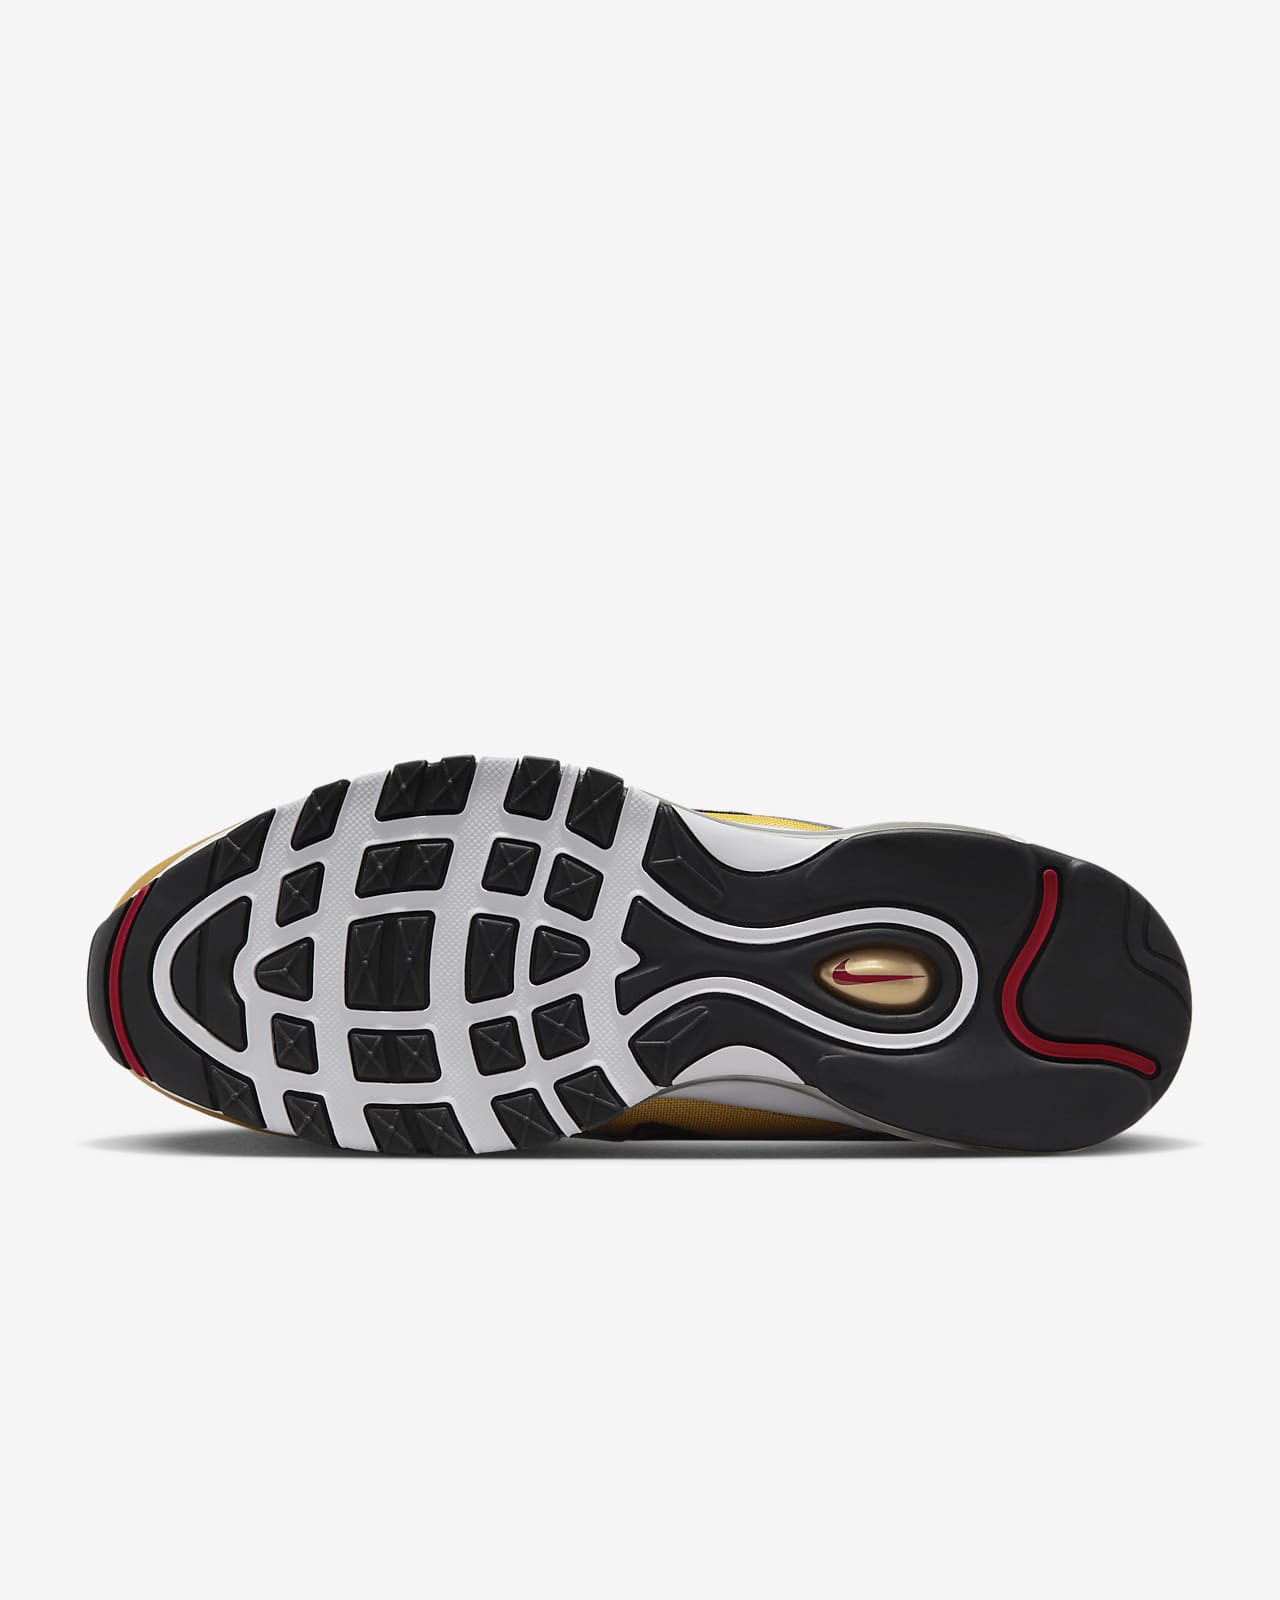 Nike Air Max 97 OG Sneakers